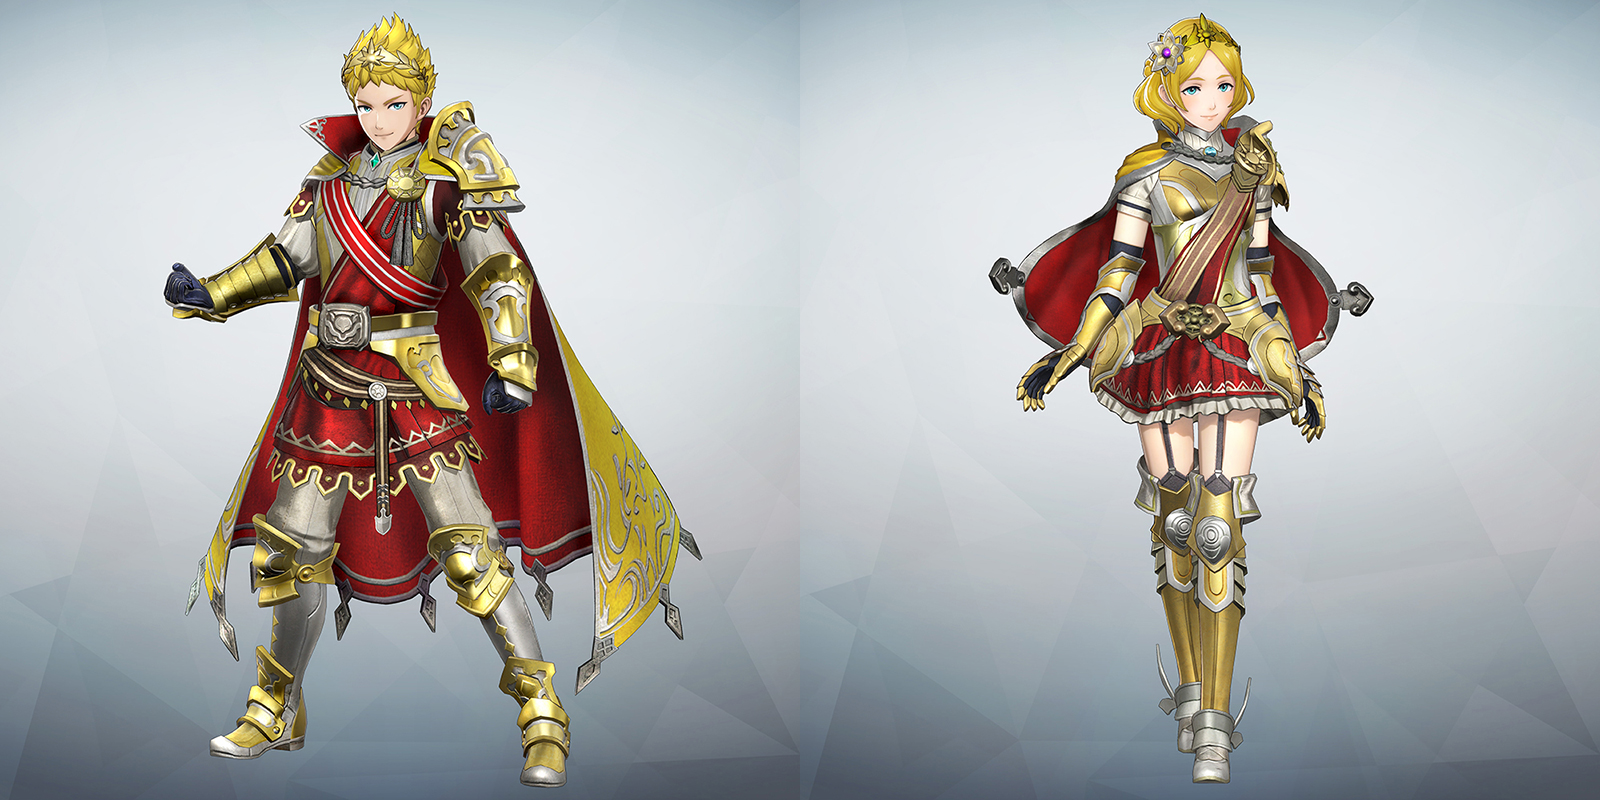 Fire emblem warriors costumes